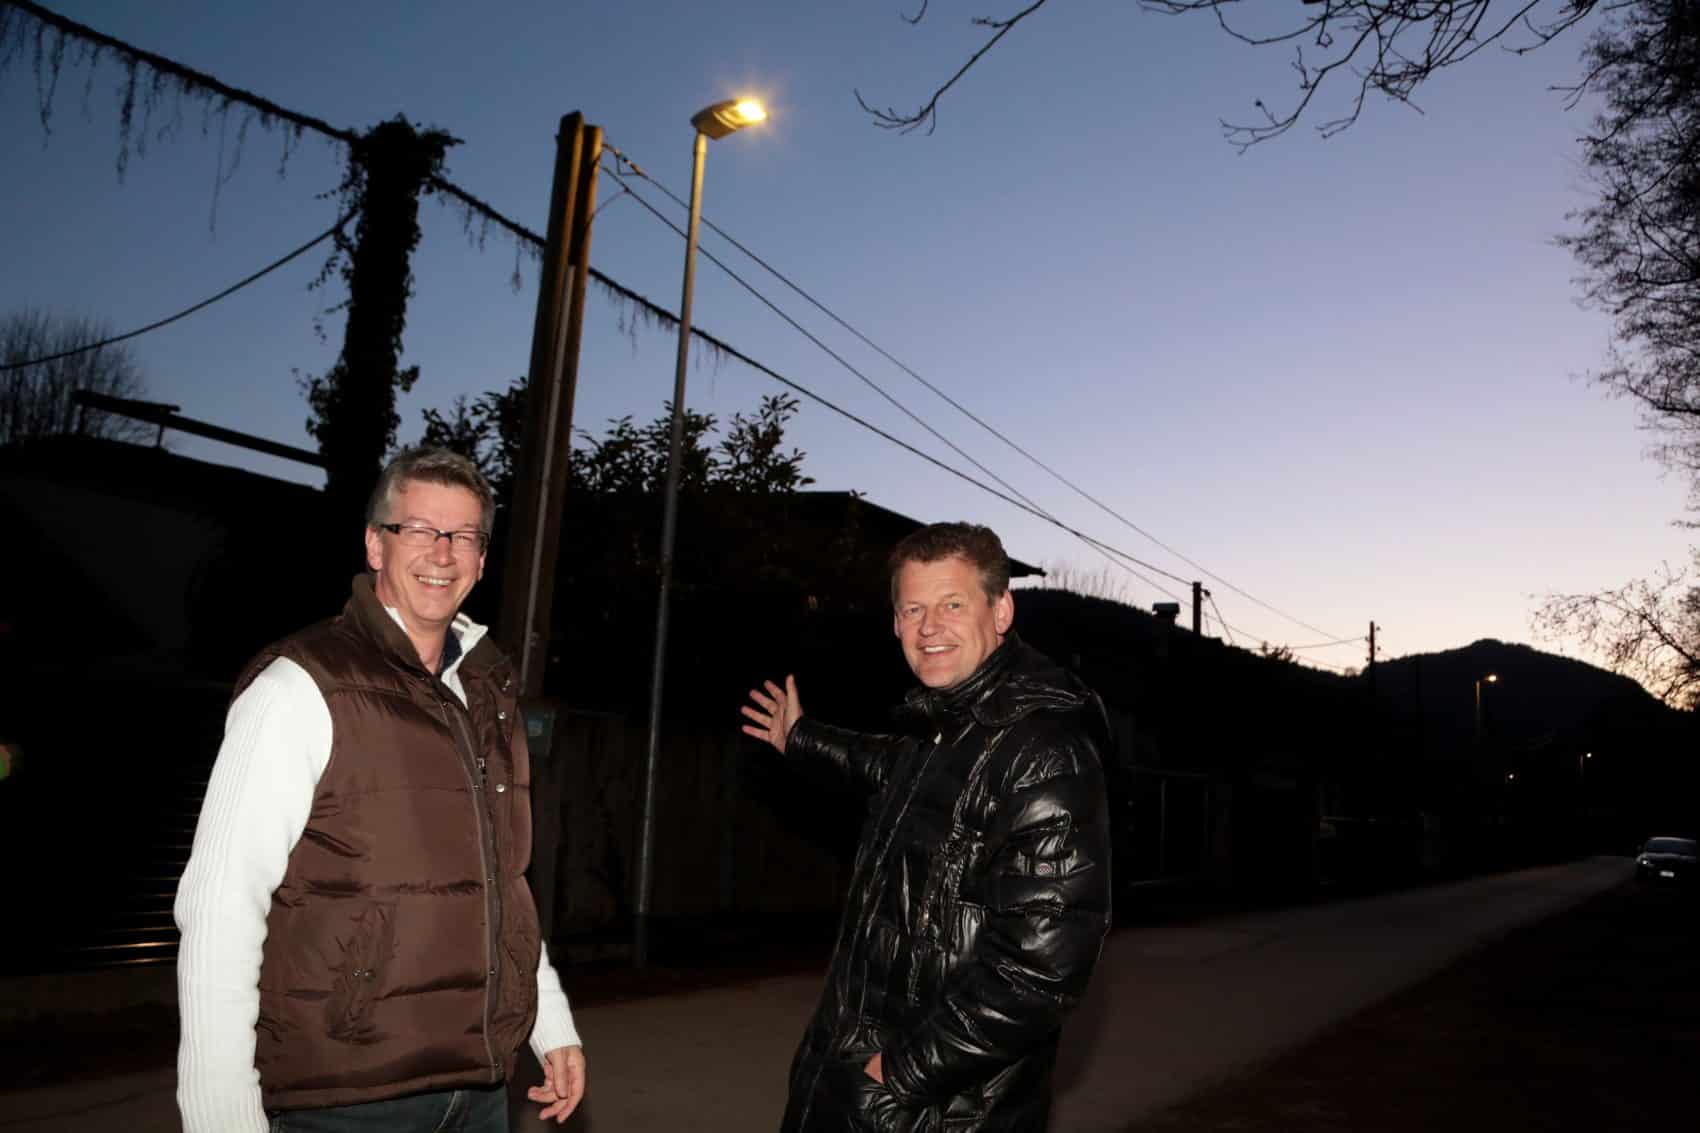 Straßenbaureferent Stadtrat Christian Scheider und Gottfried Mirnig
(Öffentliche Beleuchtung, Abt. SV) besichtigen einen Teil der neu aufgestellten LED
Lichtstellen.